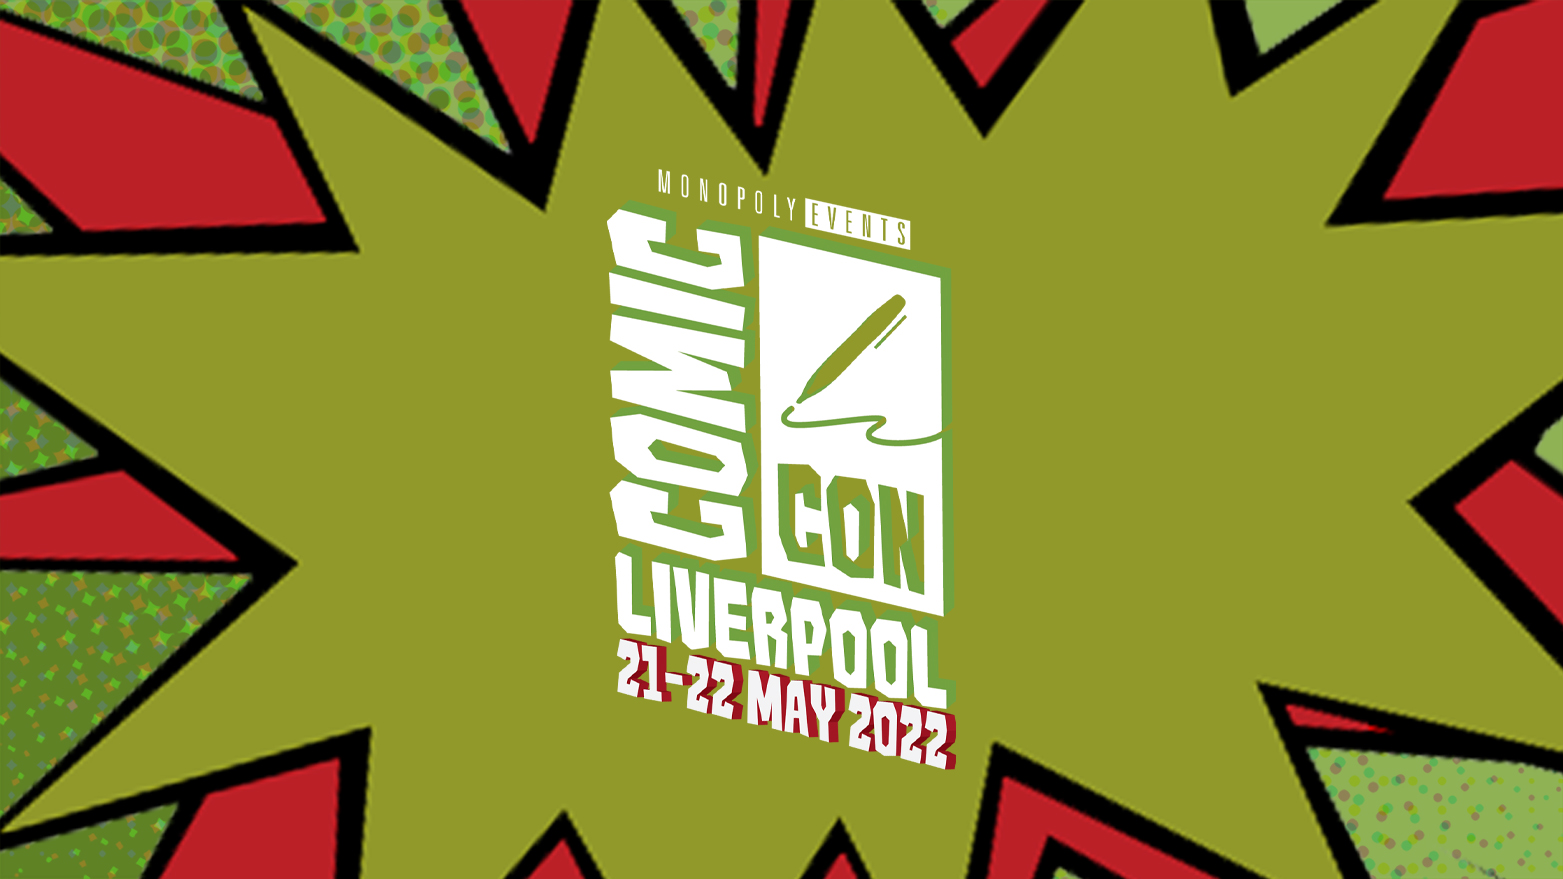 
							Comic Con Liverpool 2022